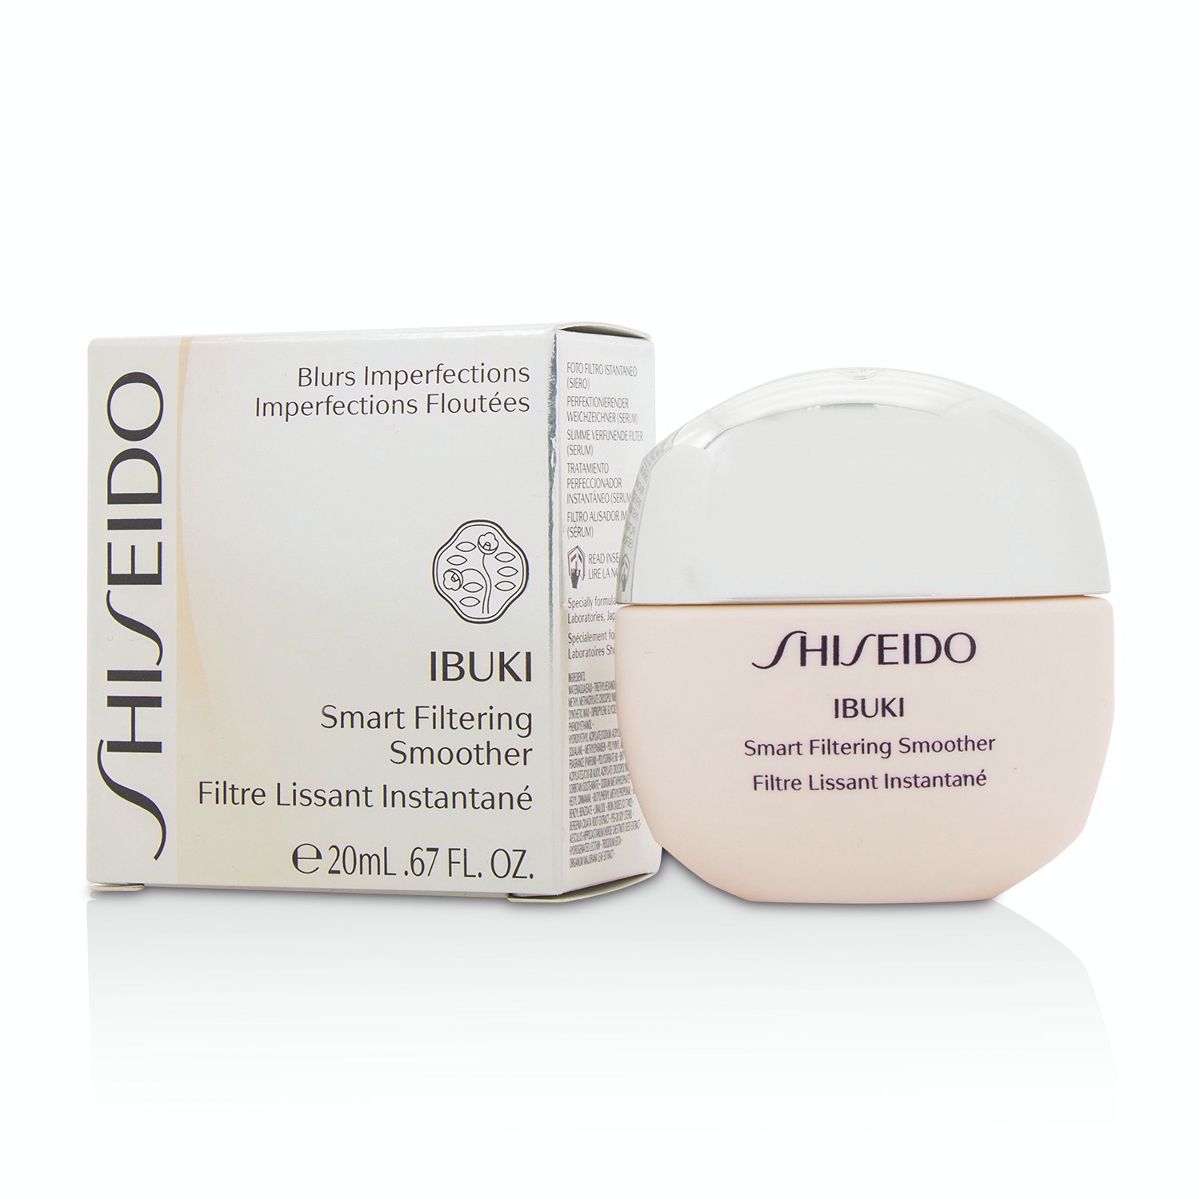 Ibuki Smart Filtering Smoother Shiseido Image